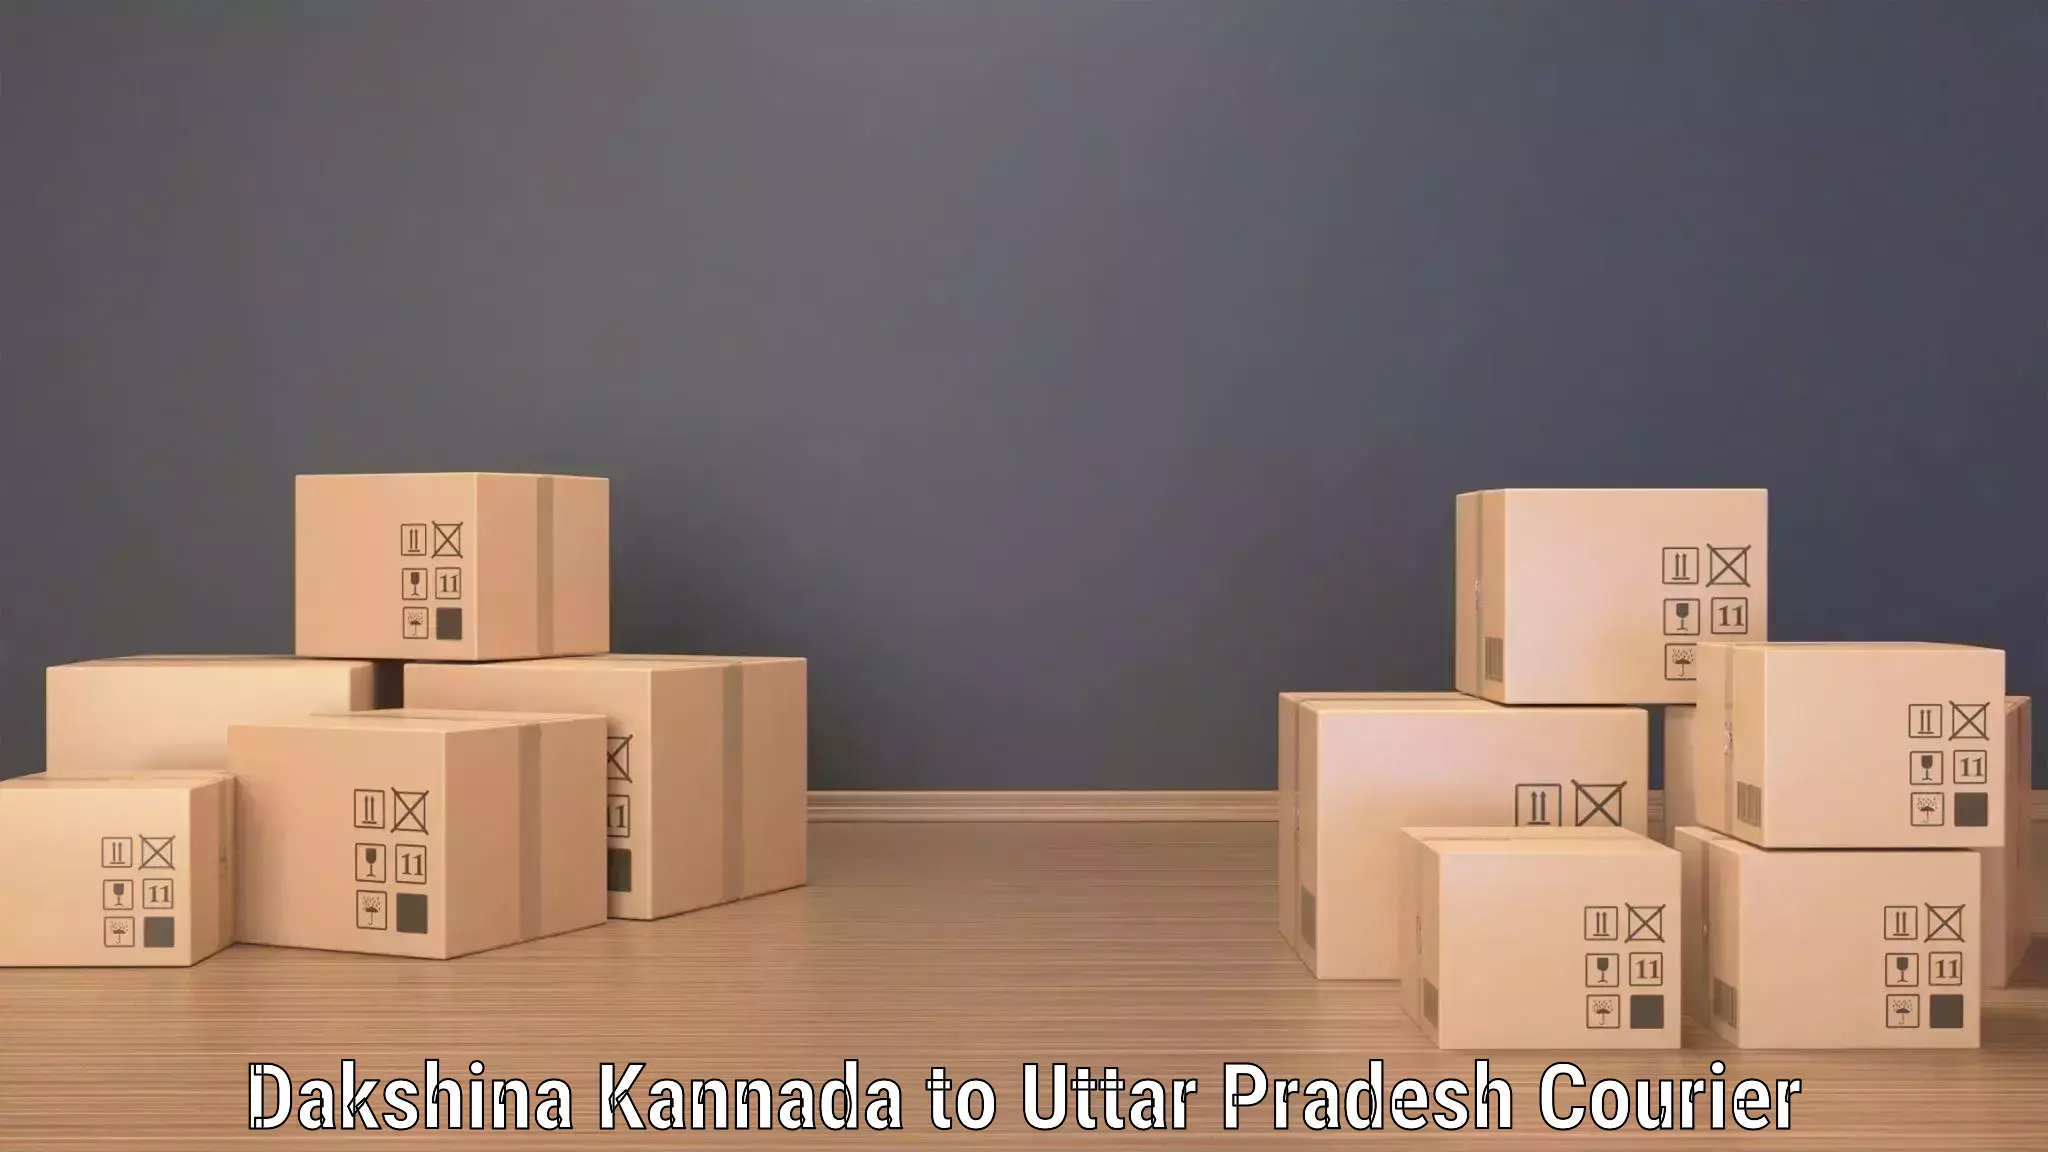 Local delivery service Dakshina Kannada to Karchhana